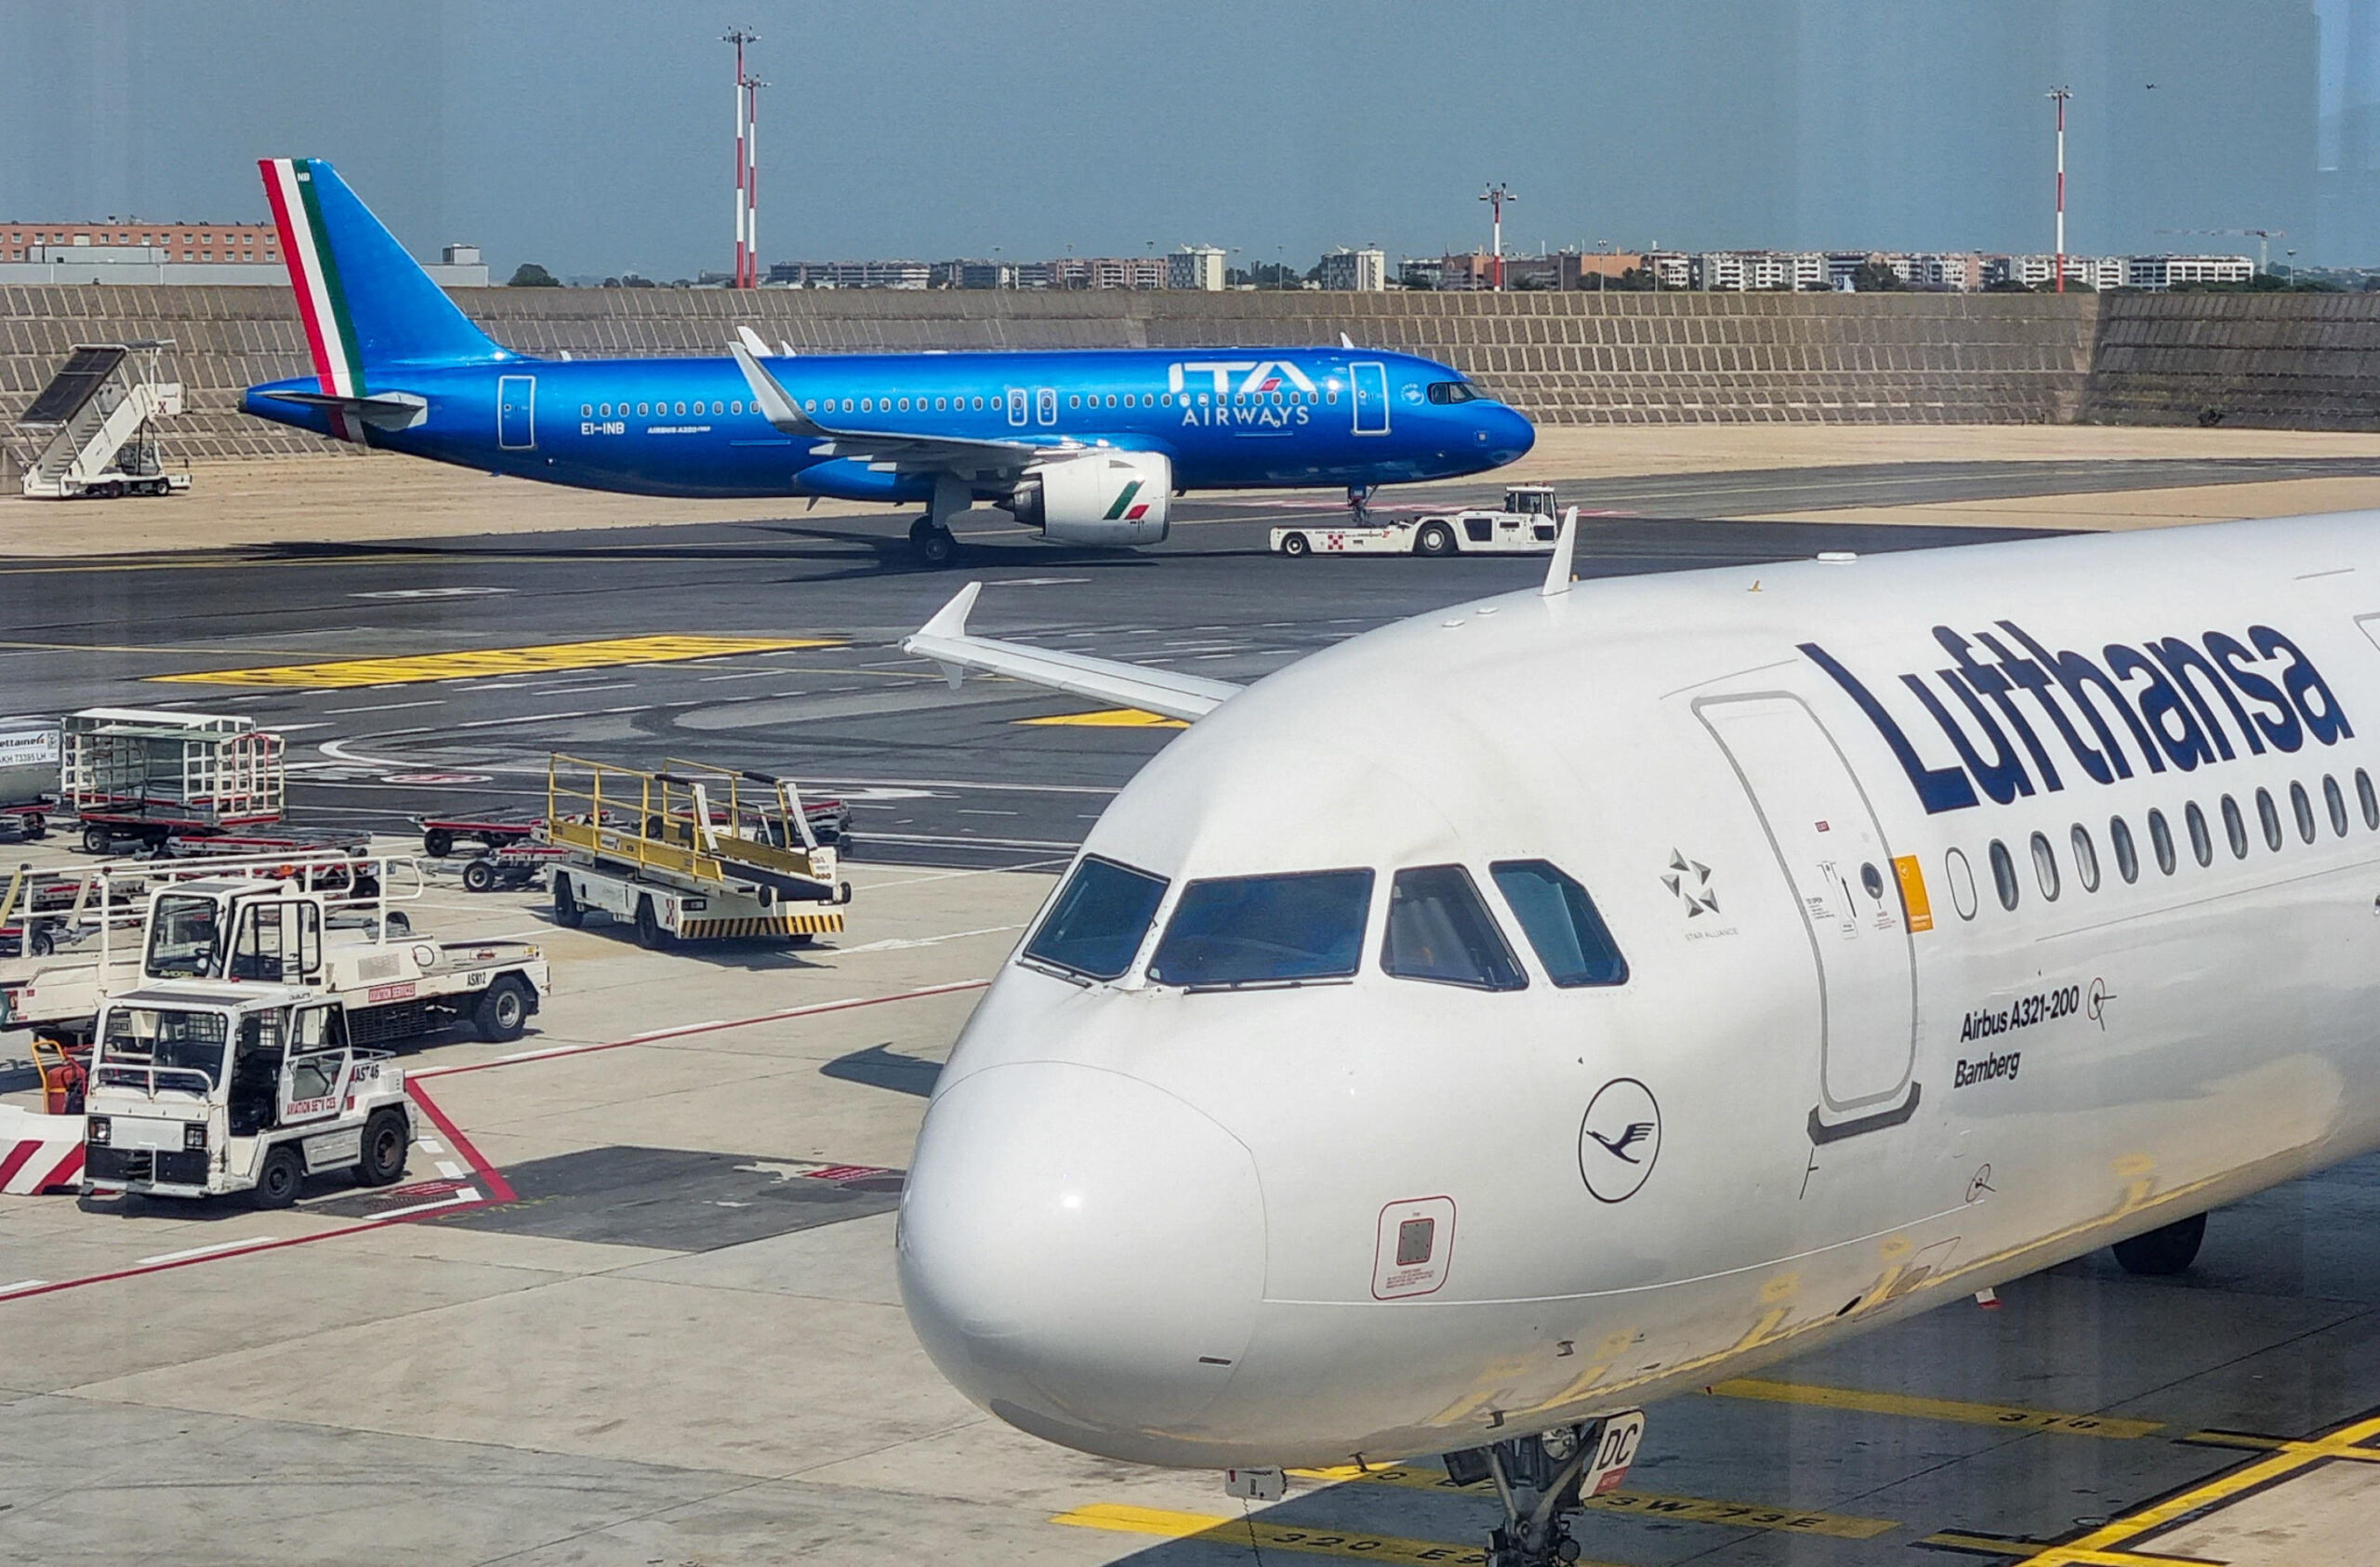 Commissione Ue: Ita-Lufthansa, rischio aumento prezzi e calo servizi